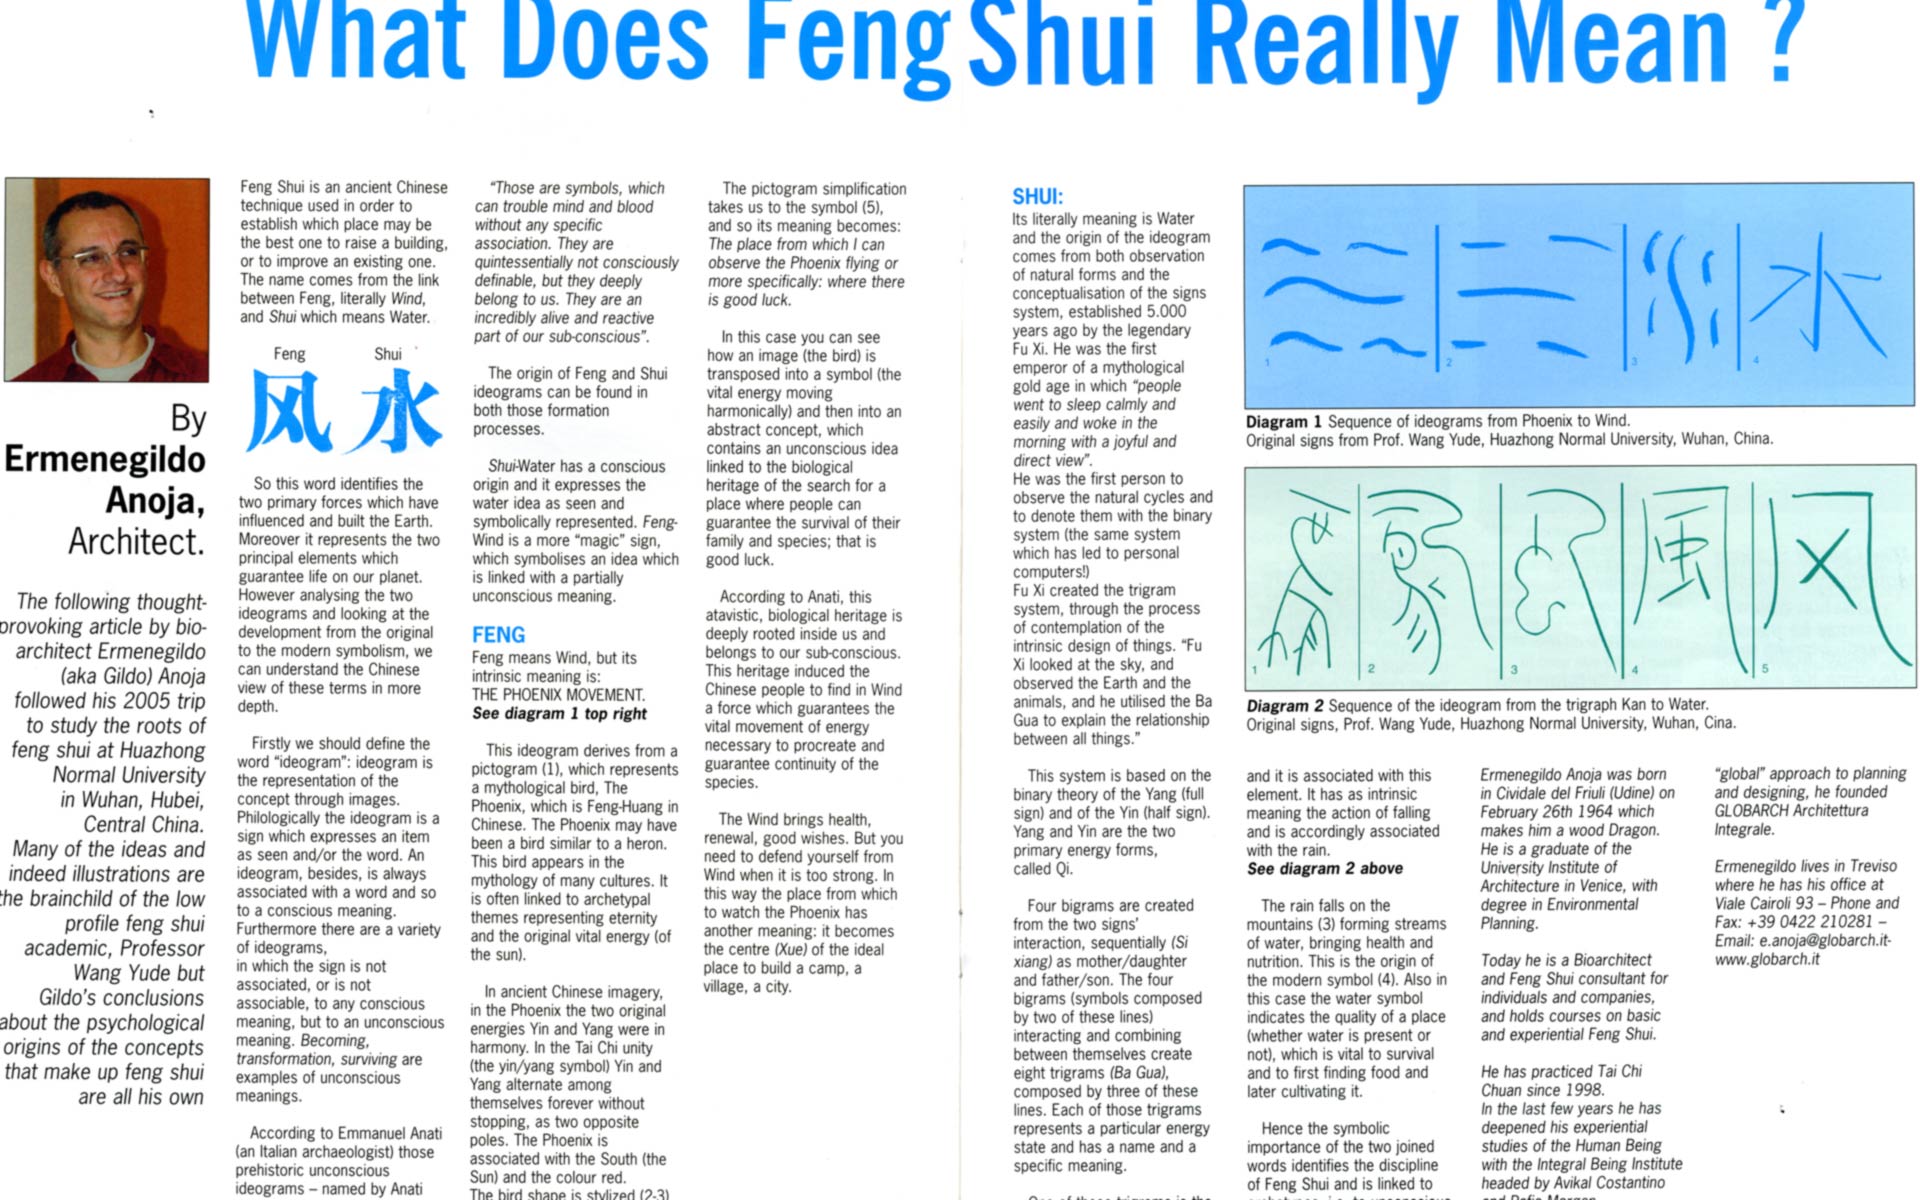 Cosa significa Feng Shui? Un articolo dell'architetto Ermenegildo Anoja